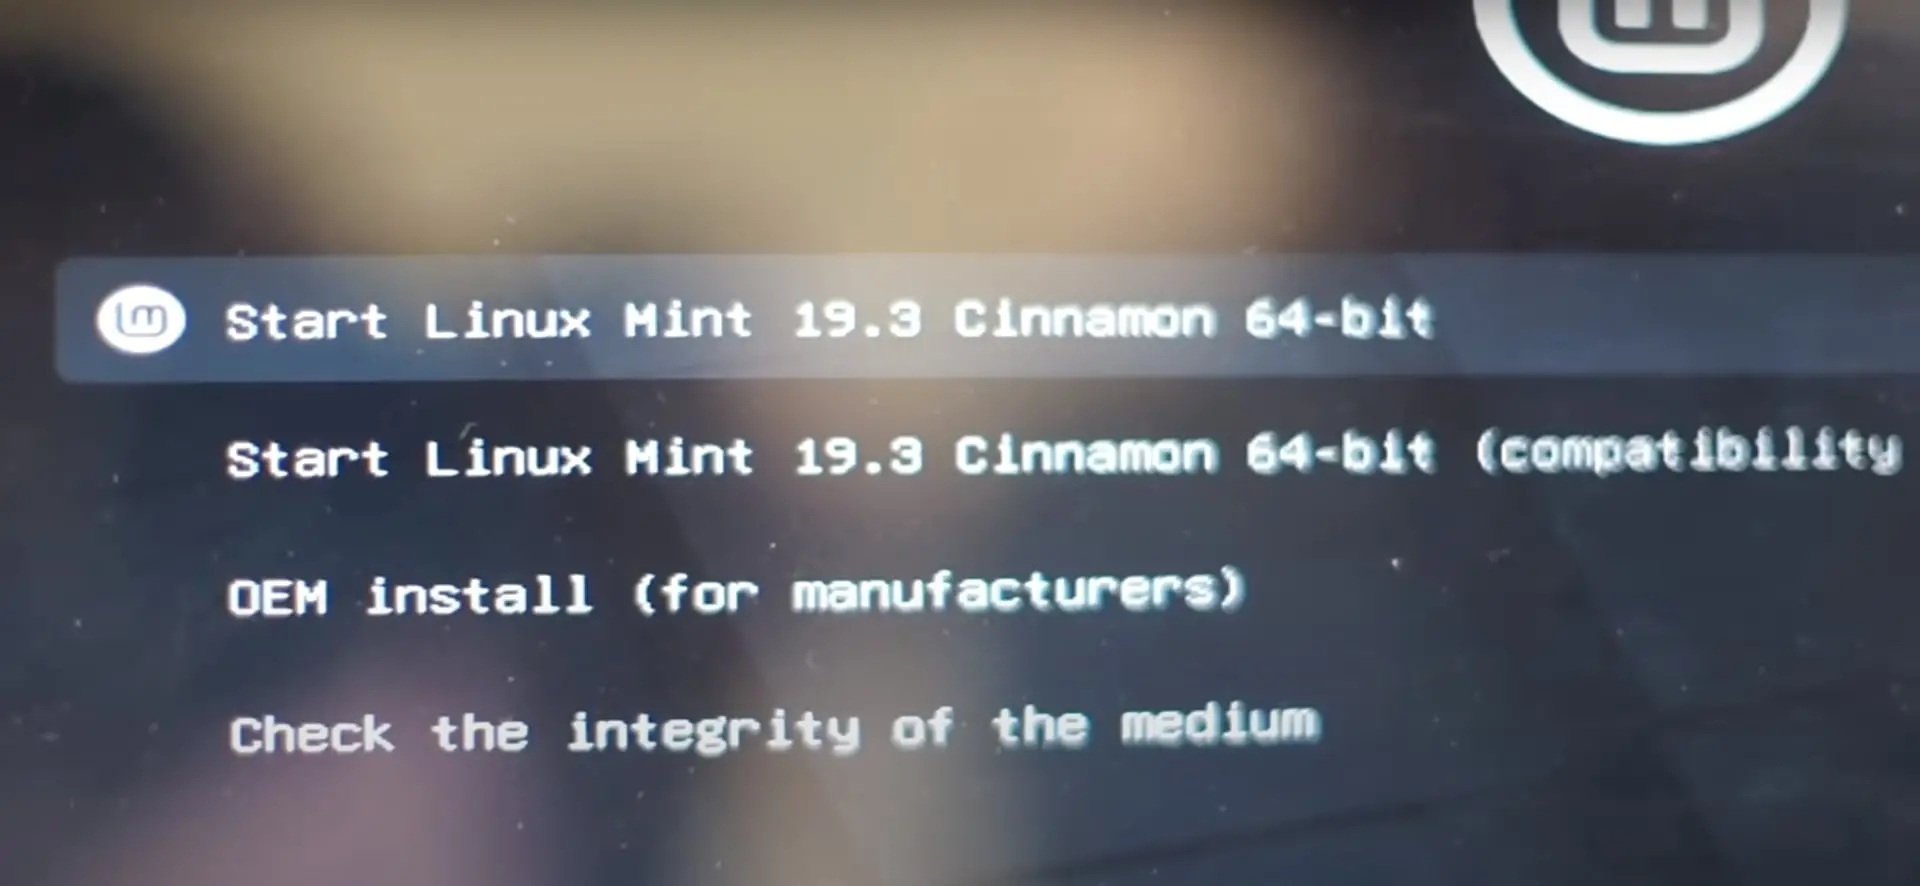 Select Linux Mint